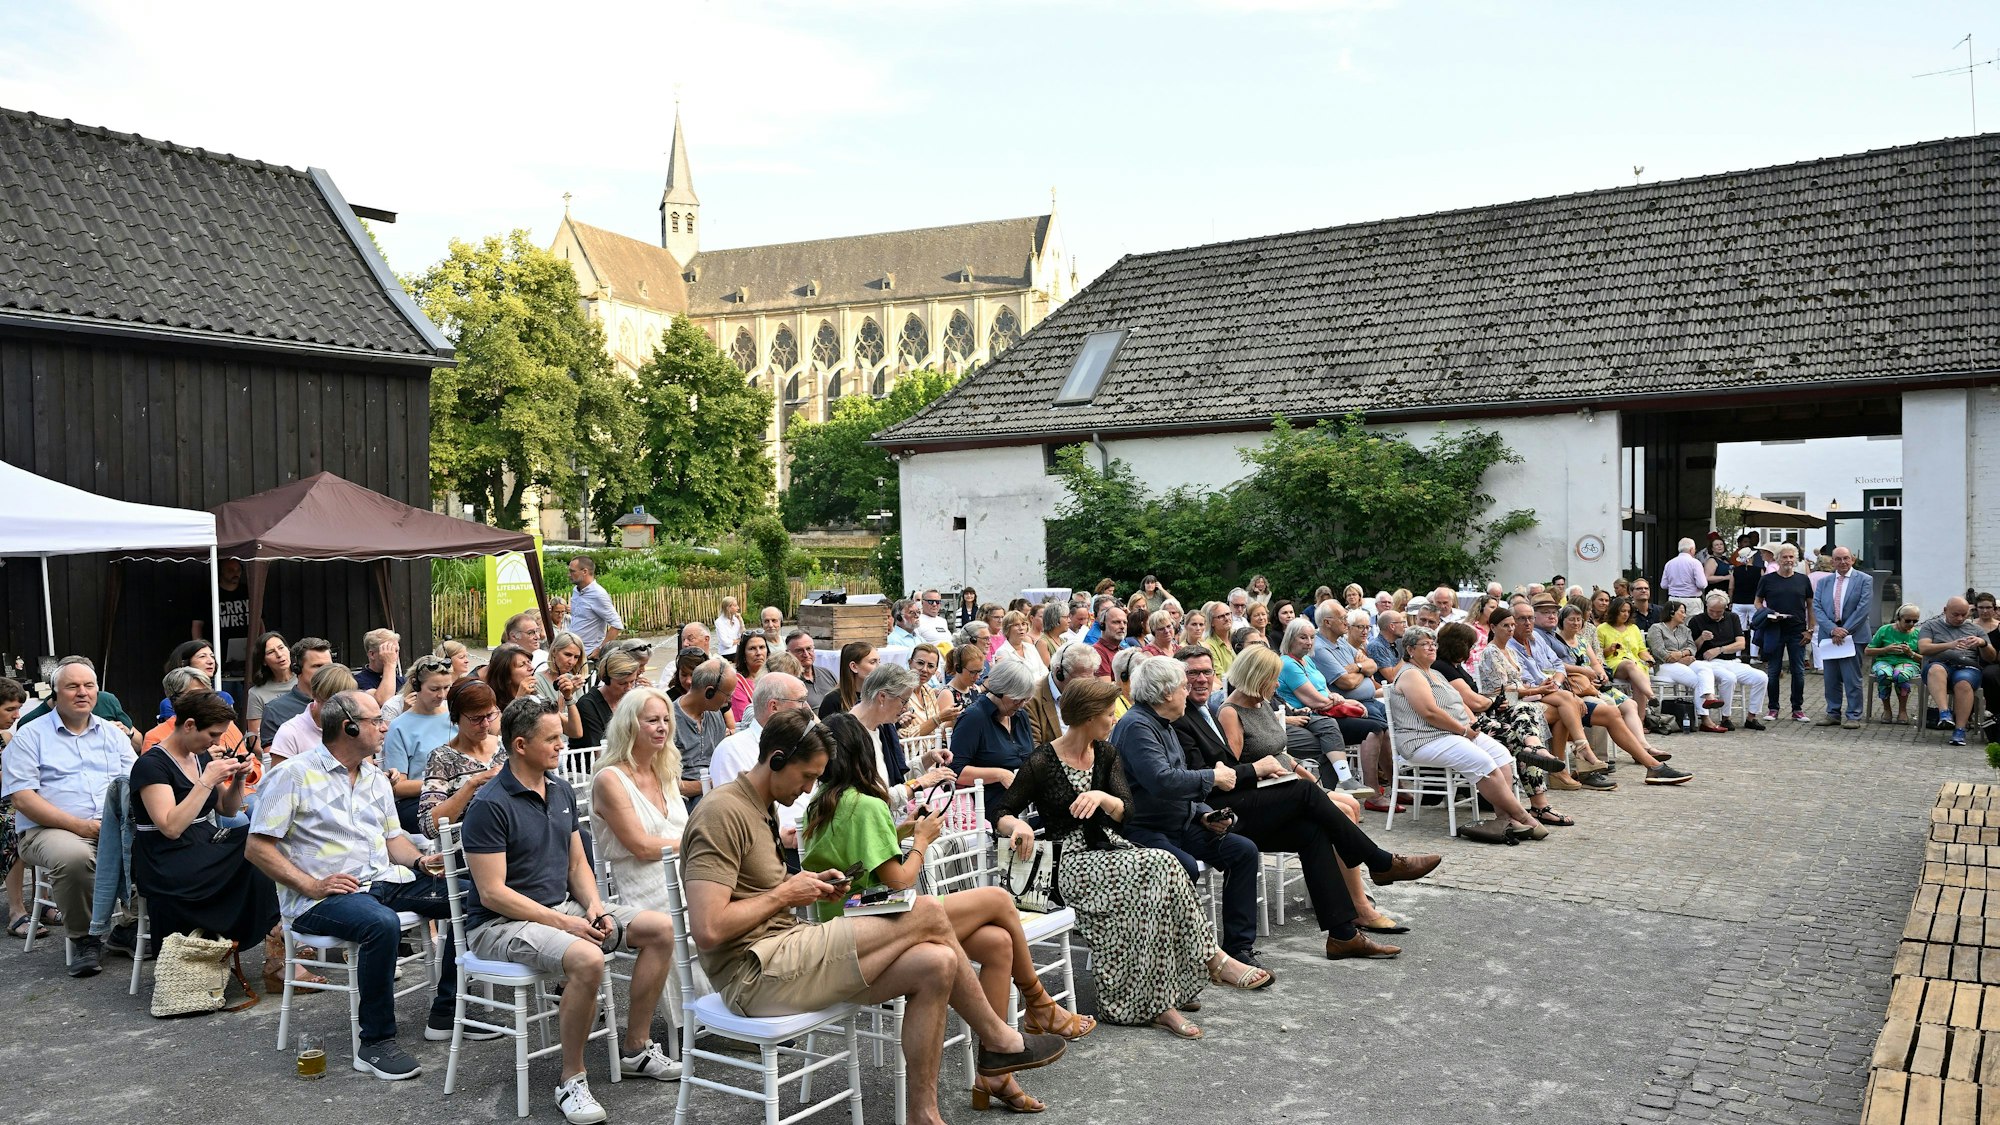 In einem Innenhof sitzen viele Menschen und blicken auf eine Bühne. Im Hintergrund ist der Altenberger Dom zu sehen.